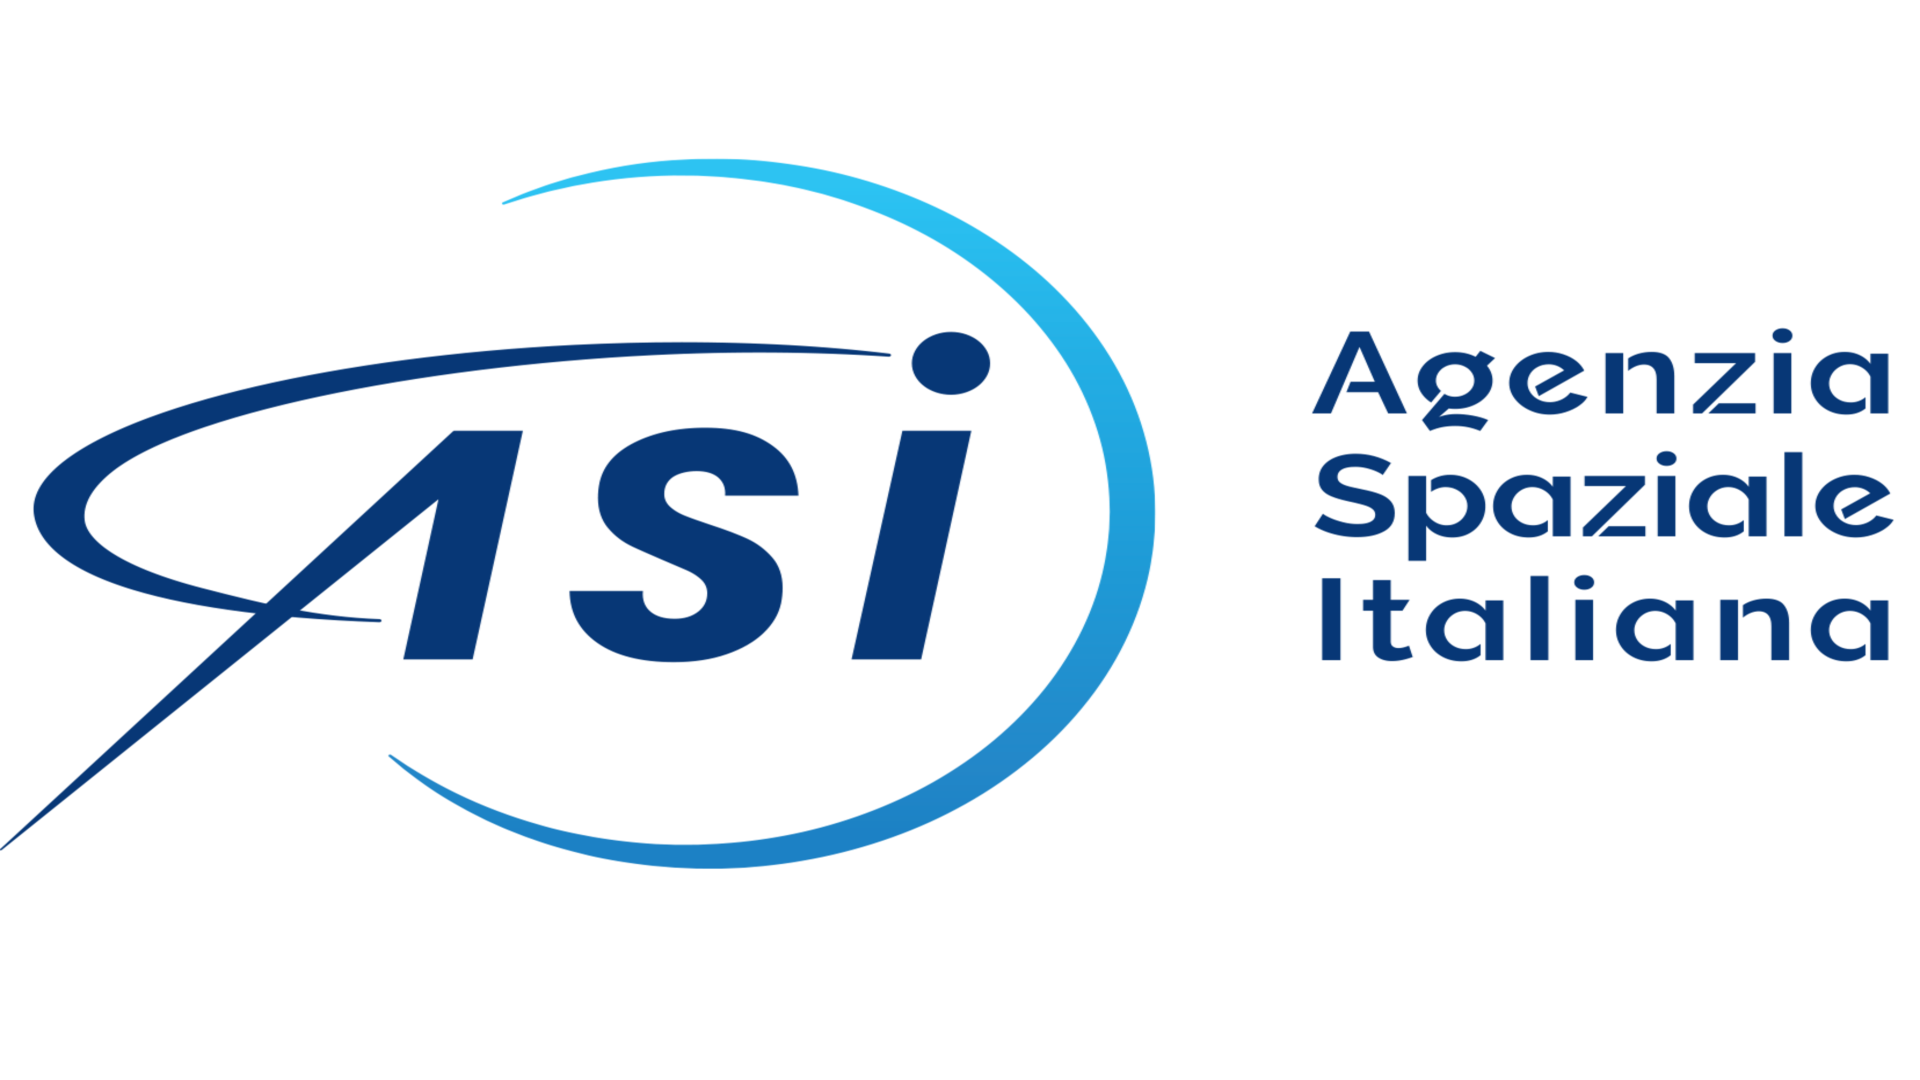 ASI - Consultazione pubblica per l’aggiornamento del Piano Triennale di Prevenzione della Corruzione e della Trasparenza dell’Agenzia Spaziale Italiana per il triennio 2022-2024